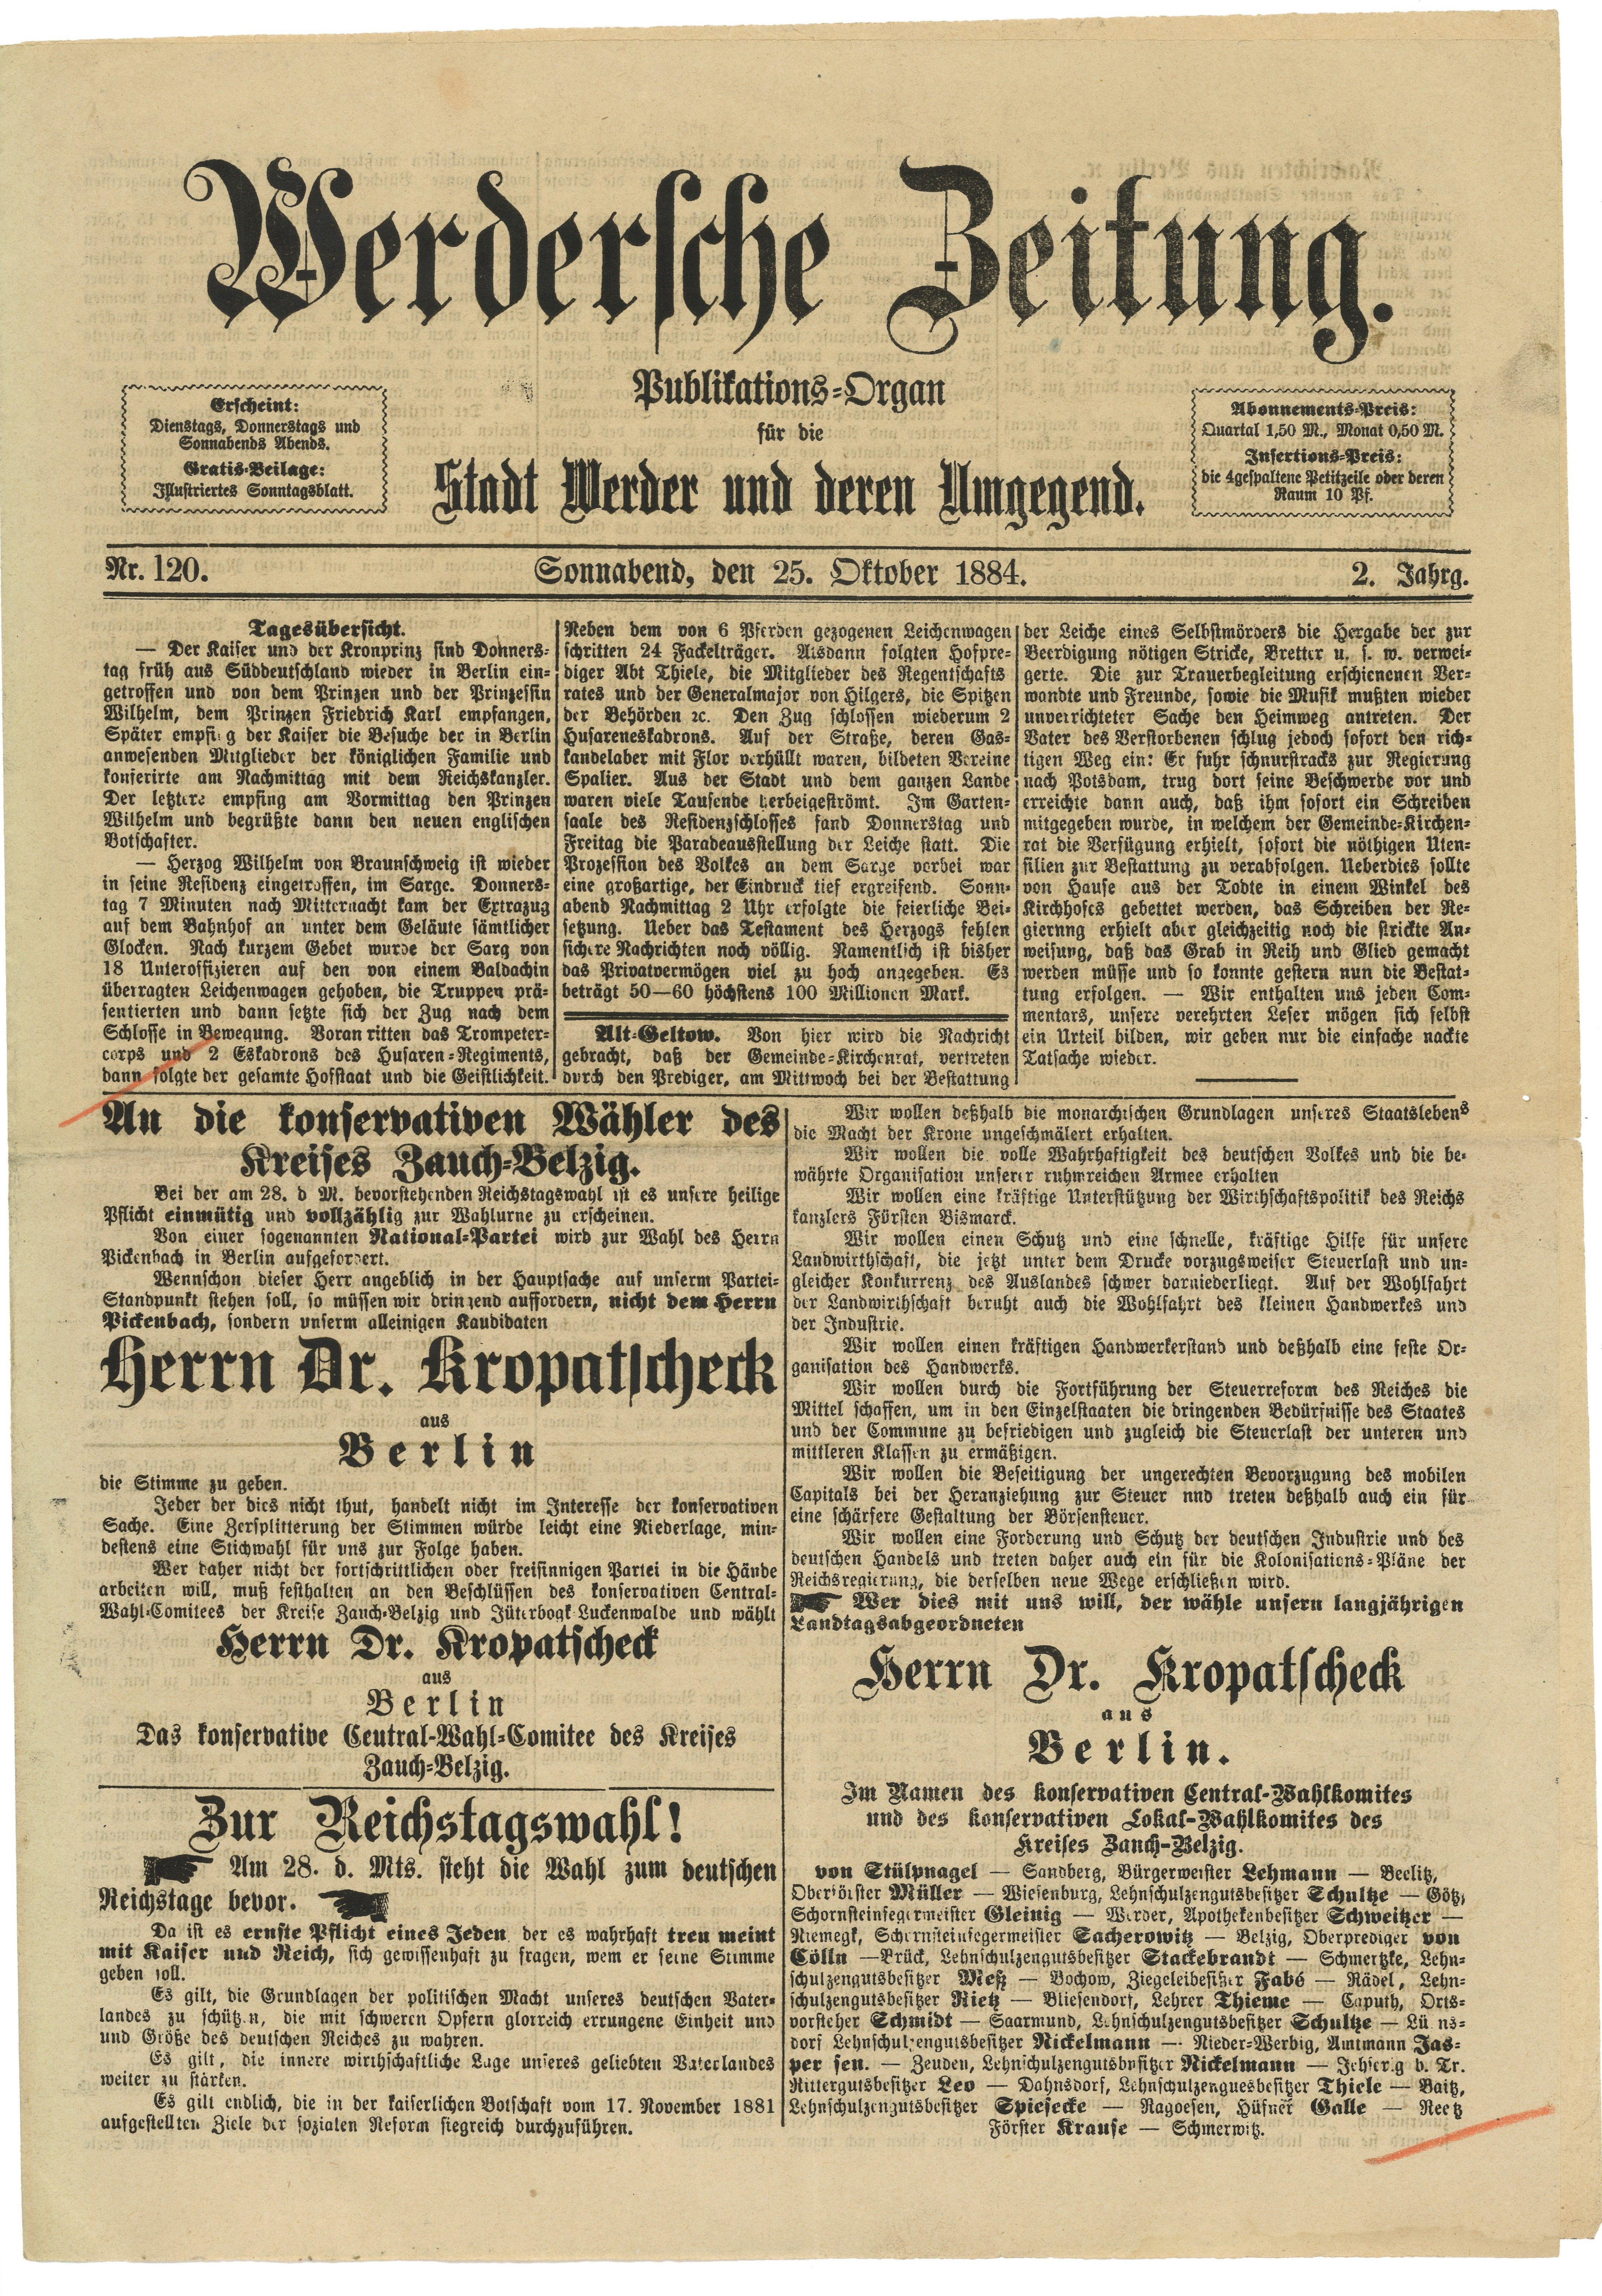 Werdersche Zeitung, Jg. 2, Nr. 120, 25. Oktober 1884 (Landesgeschichtliche Vereinigung für die Mark Brandenburg e.V., Archiv CC BY)